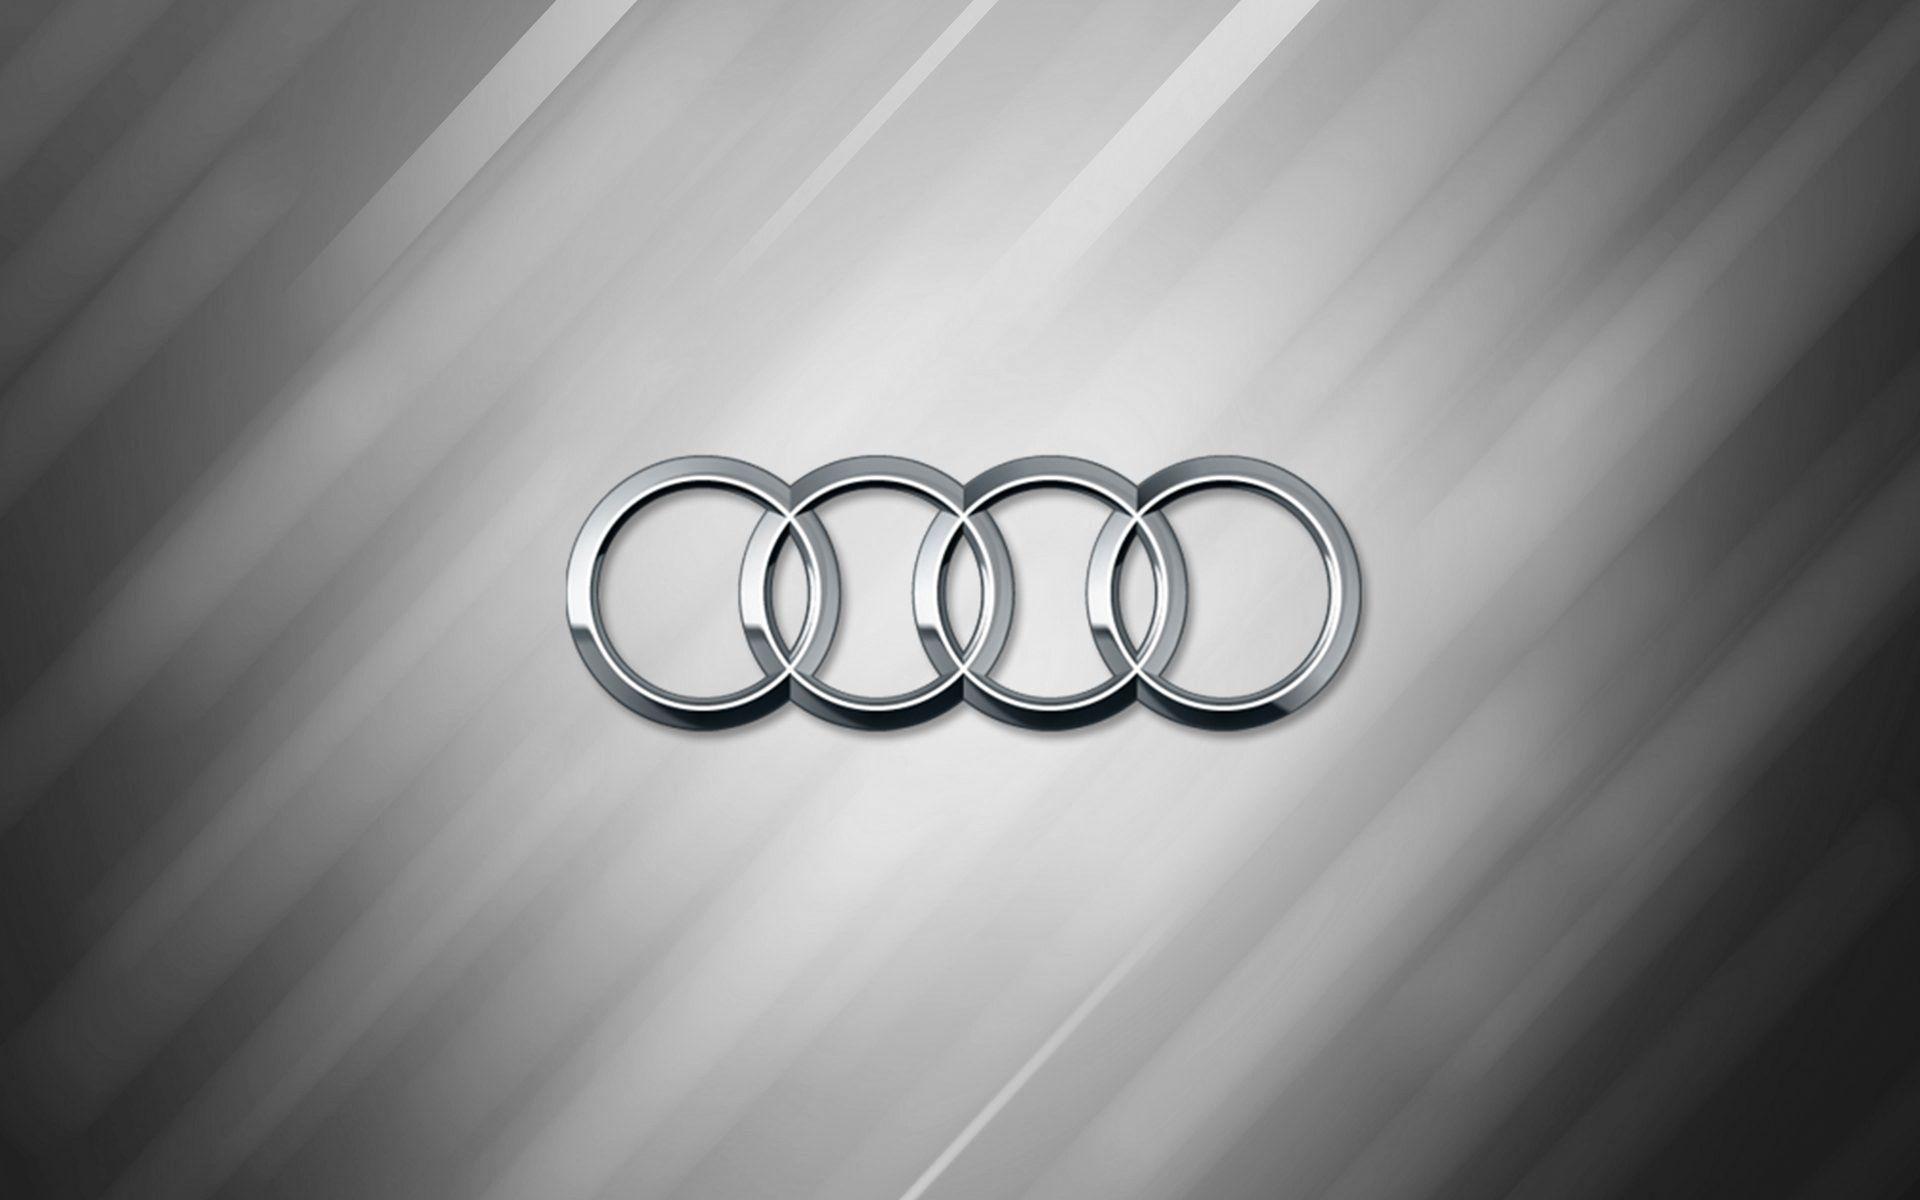 Audi Logo Wallpapers - Wallpaper Cave